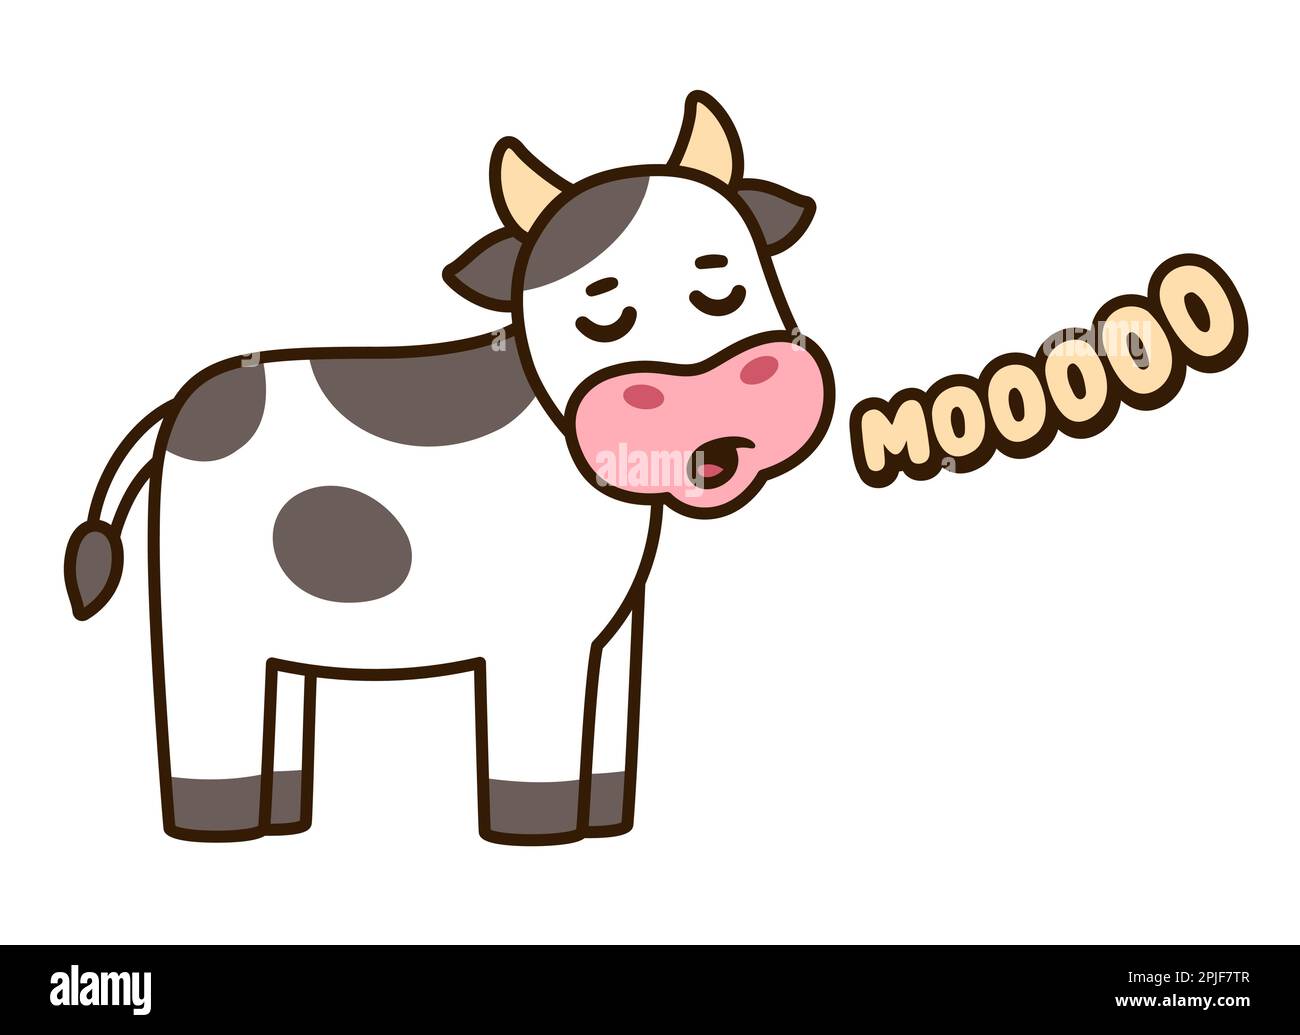 Süße Kuh, die Muh sagt, lustige Handzeichnung. Einfaches Zeichnen, Vektorclip Art. Stock Vektor